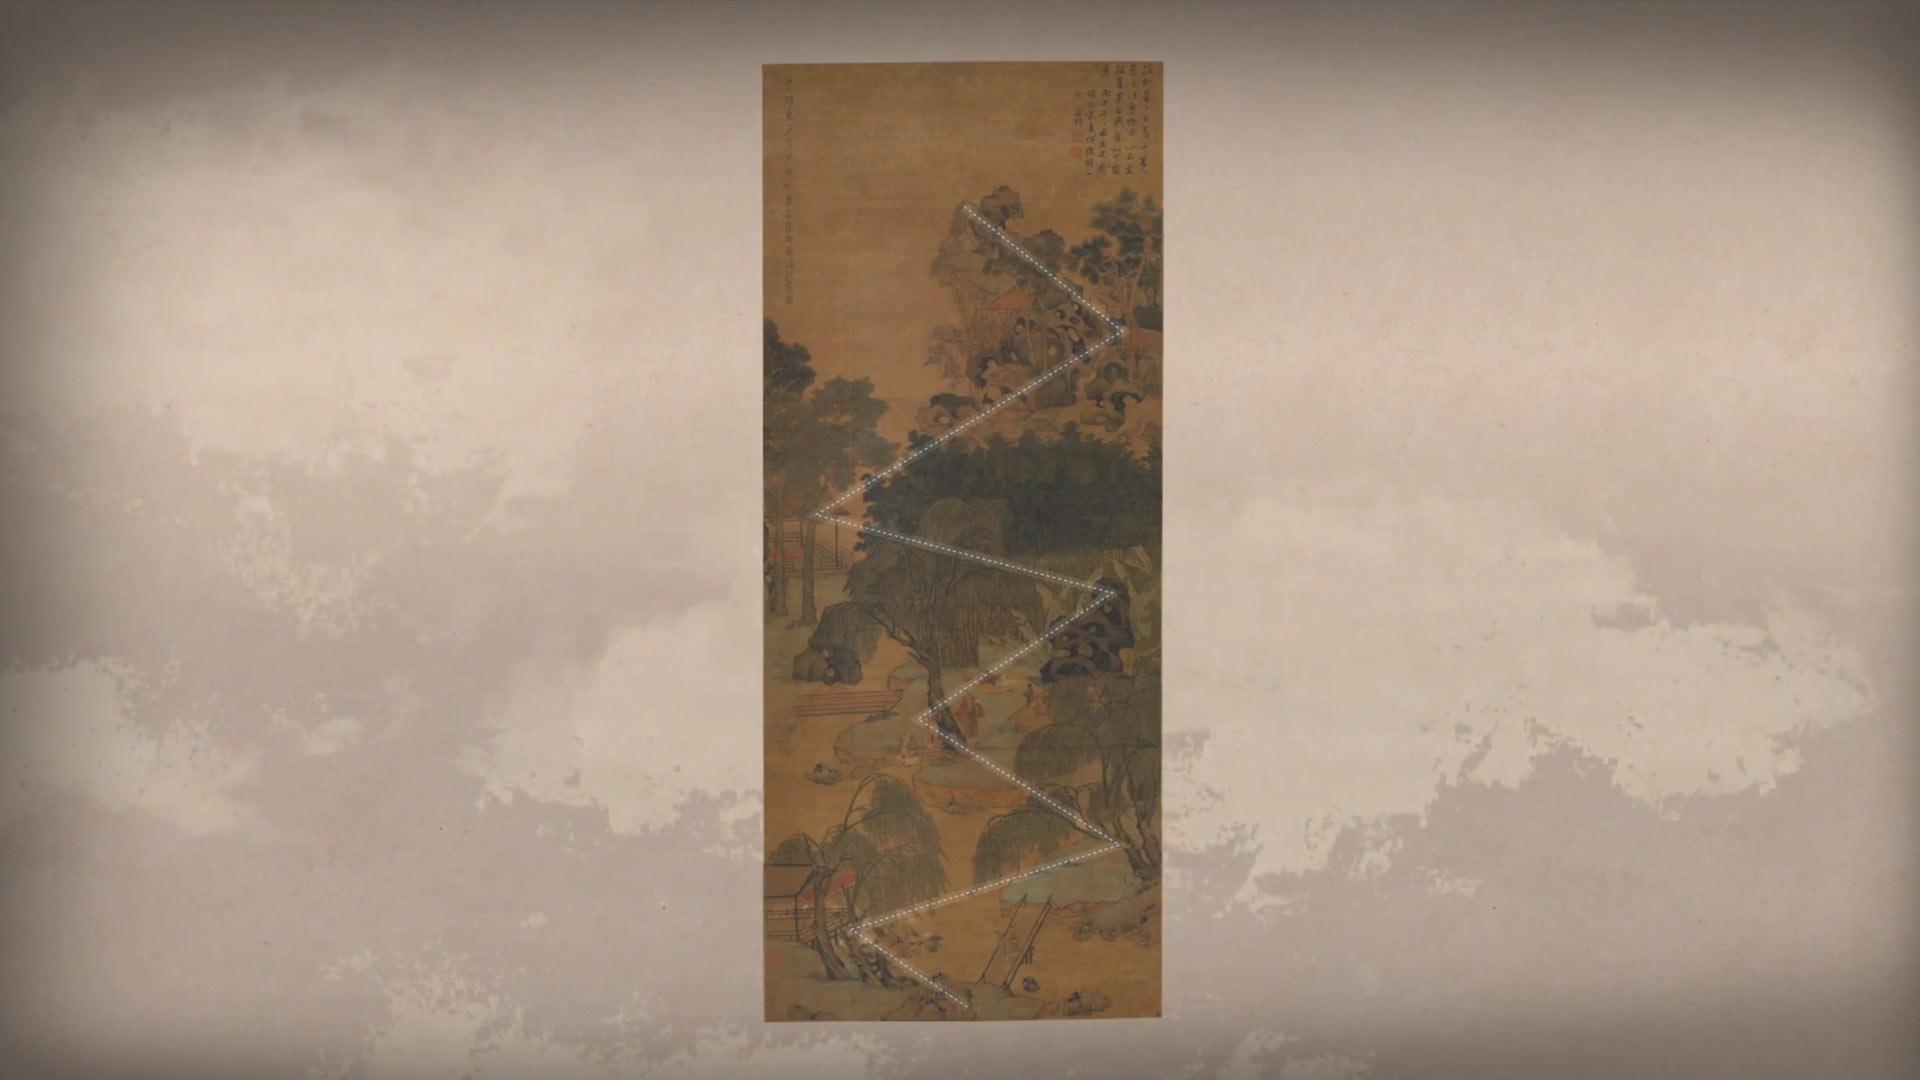 《呼吸美学－中国古画赏析》: 画里园林有洞天 (2021年)<p>画作提供：香港艺术馆虚白斋藏</p>